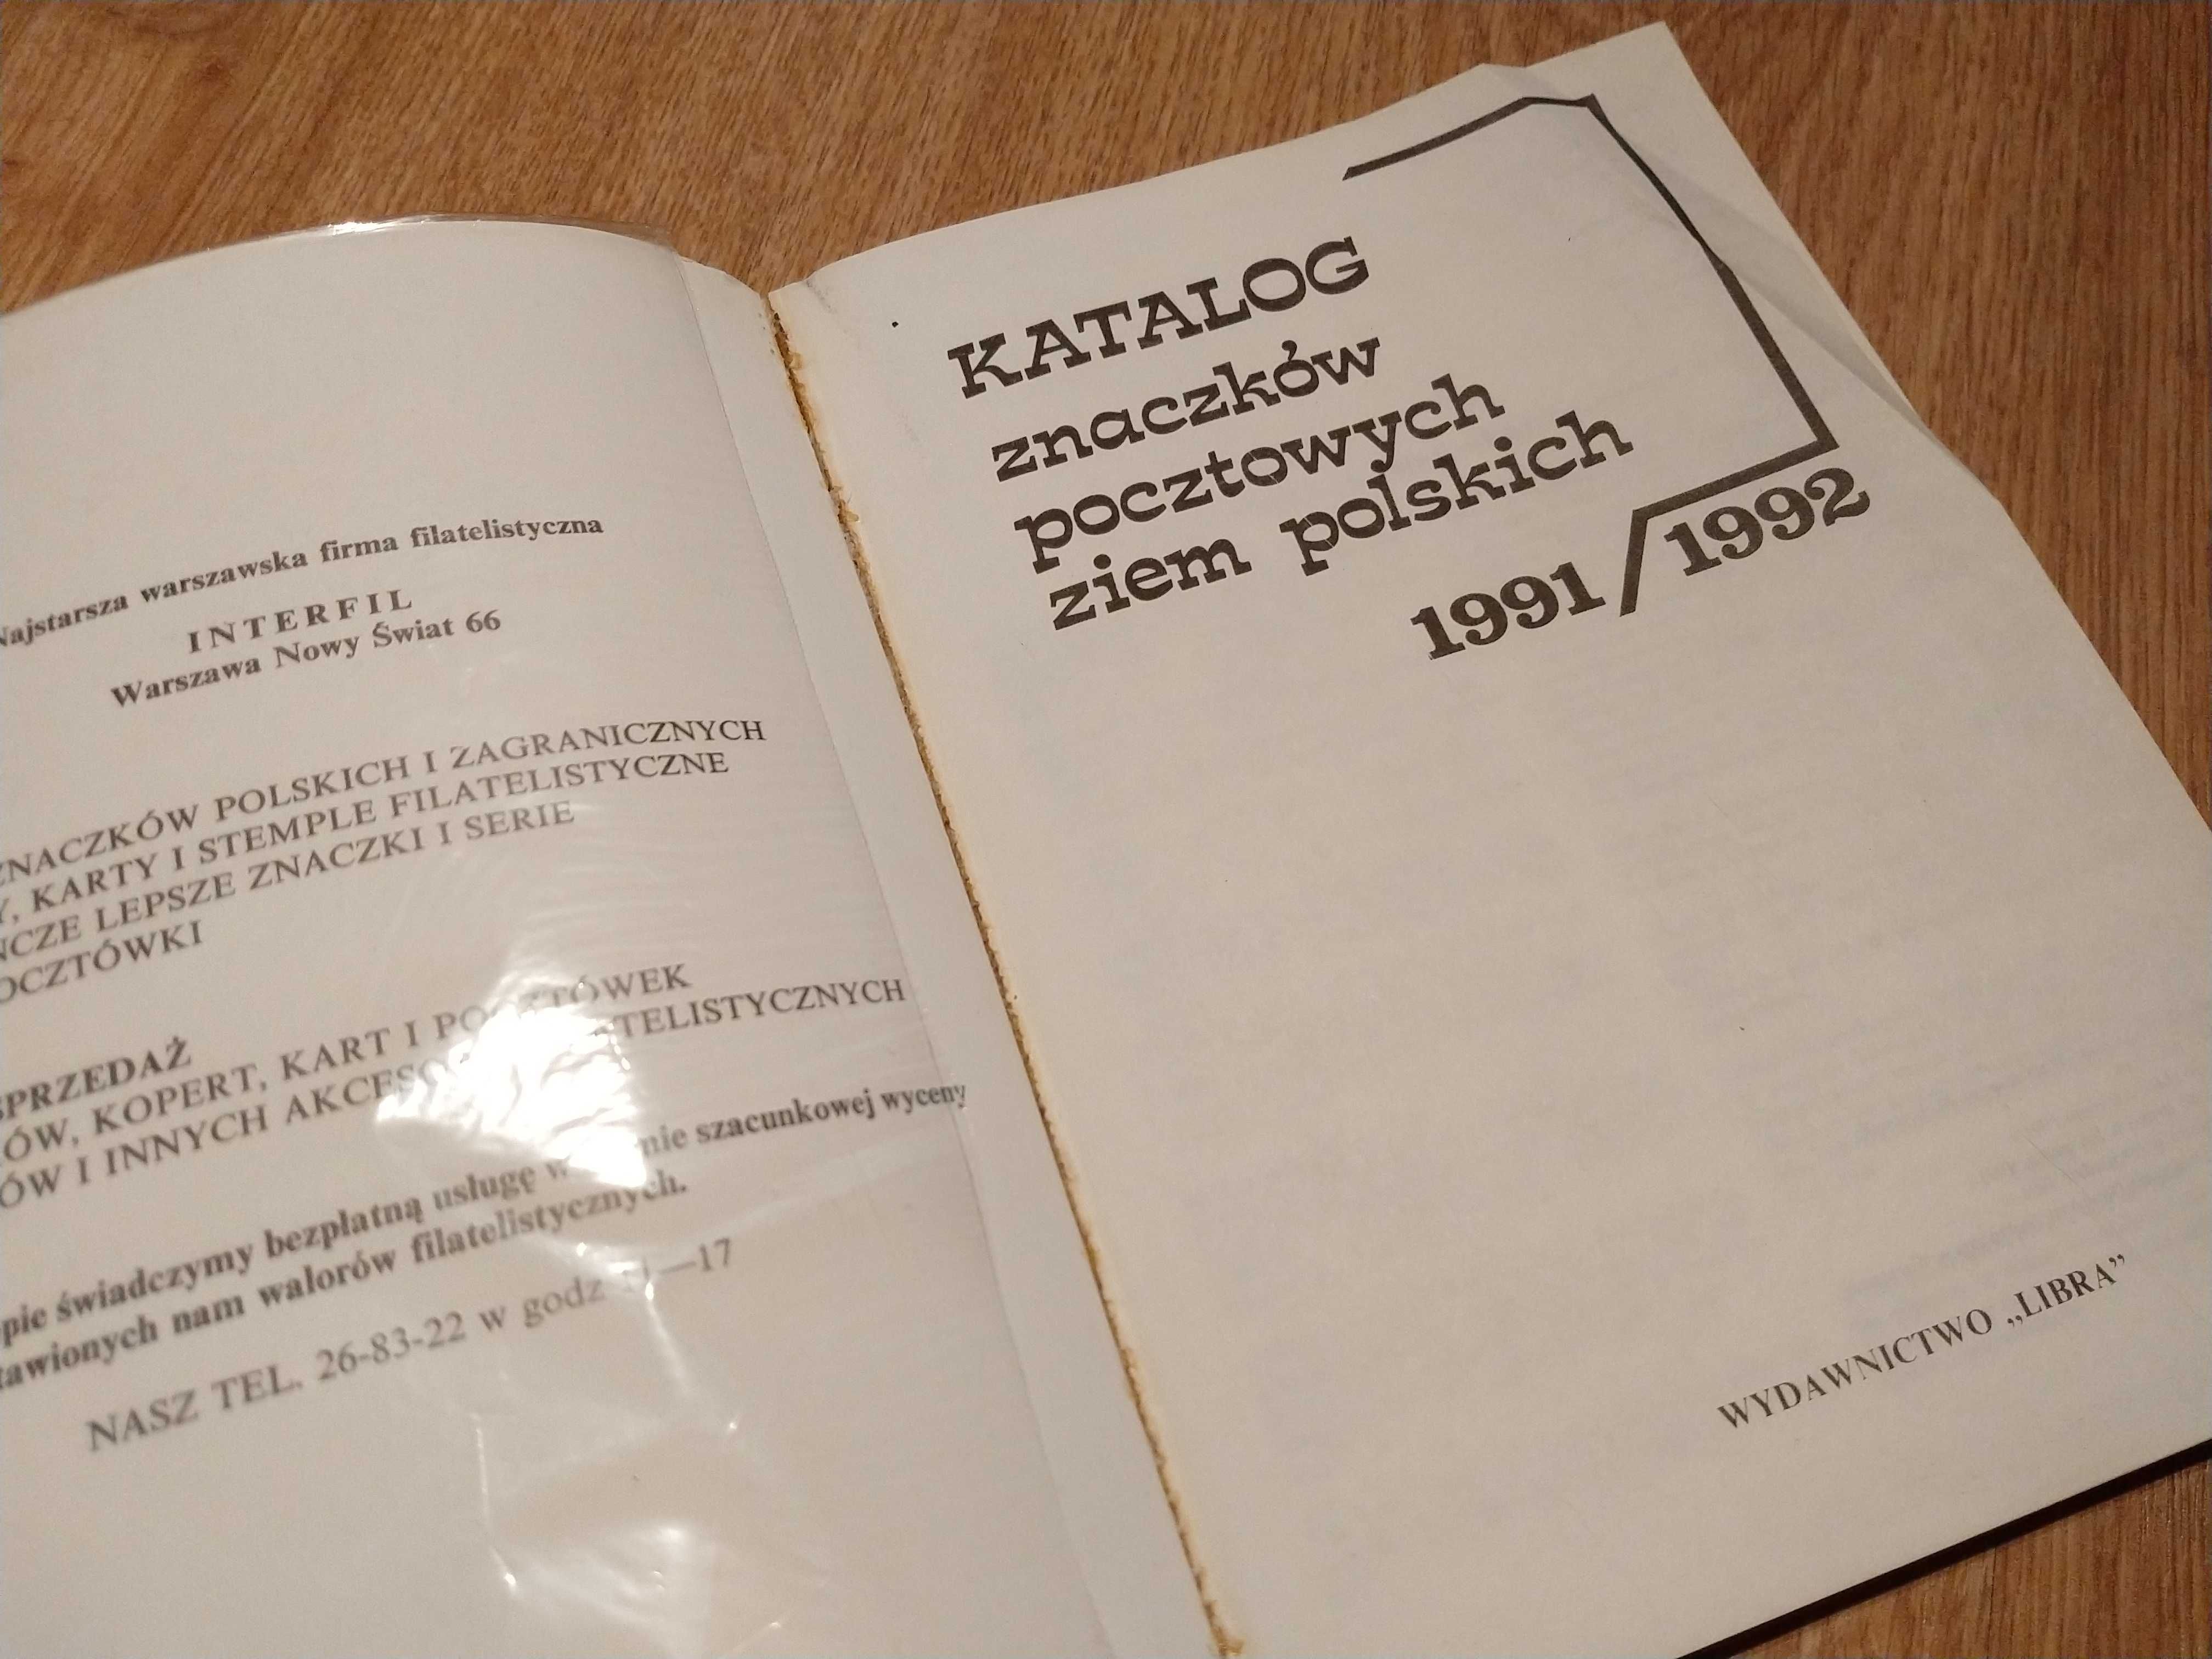 Katalog znaczków pocztowych ziem polskich 1991 / 1992